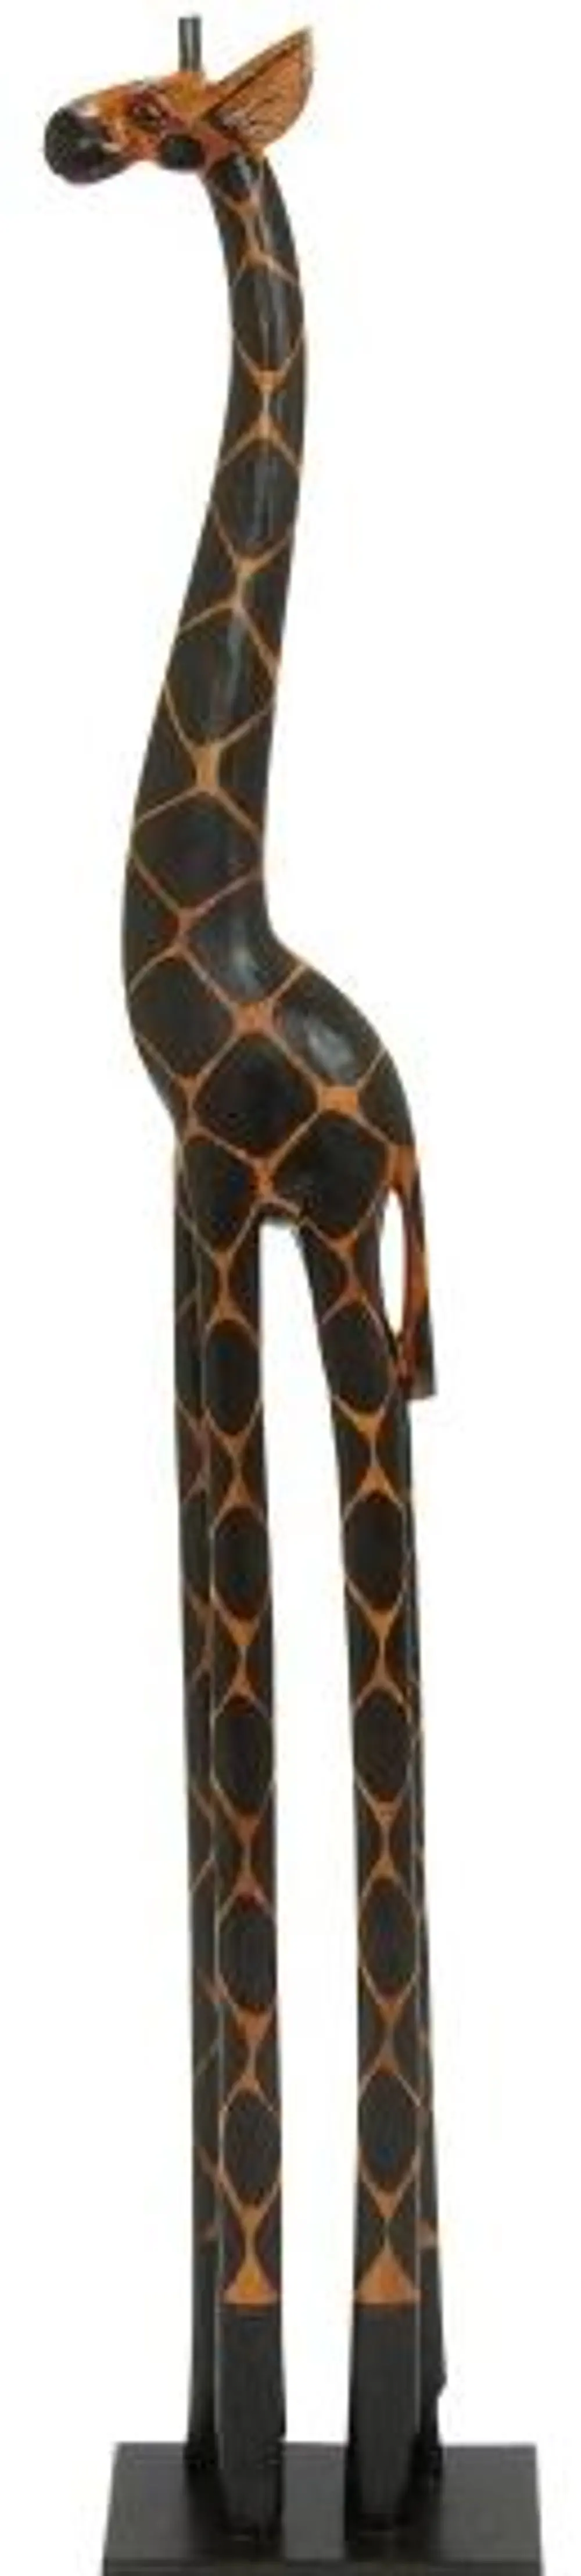 40 Inch Wooden Giraffe Sculpture-1